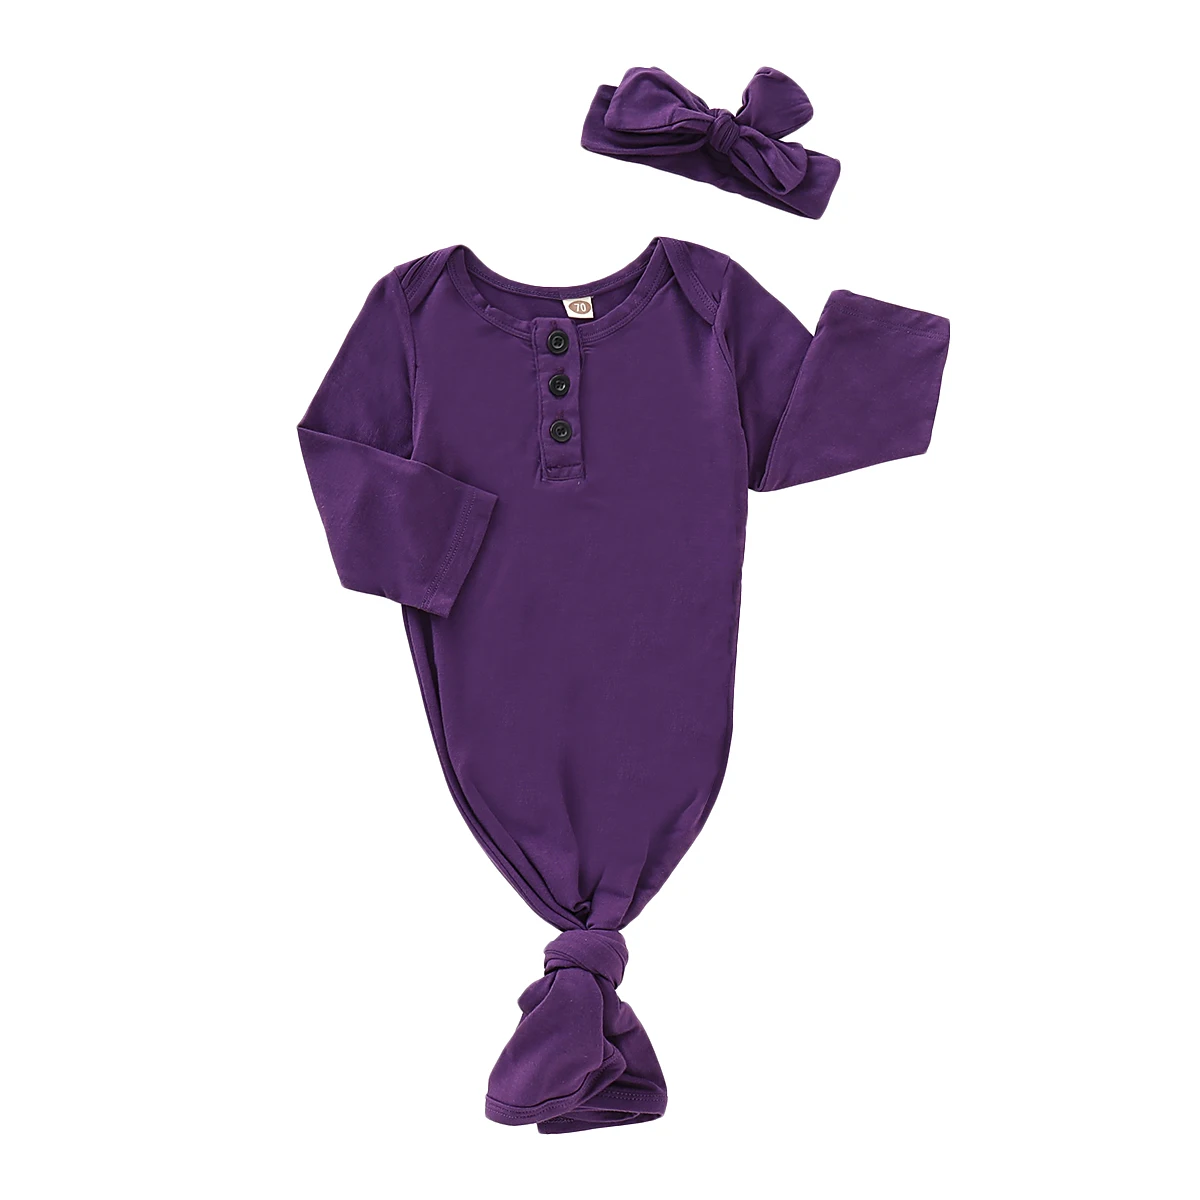 Детские постельные принадлежности для сна, сумки для новорожденных, детское одеяло в полоску, одежда для постельных принадлежностей, шапка, комплект из 2 предметов с длинными рукавами - Цвет: Фиолетовый